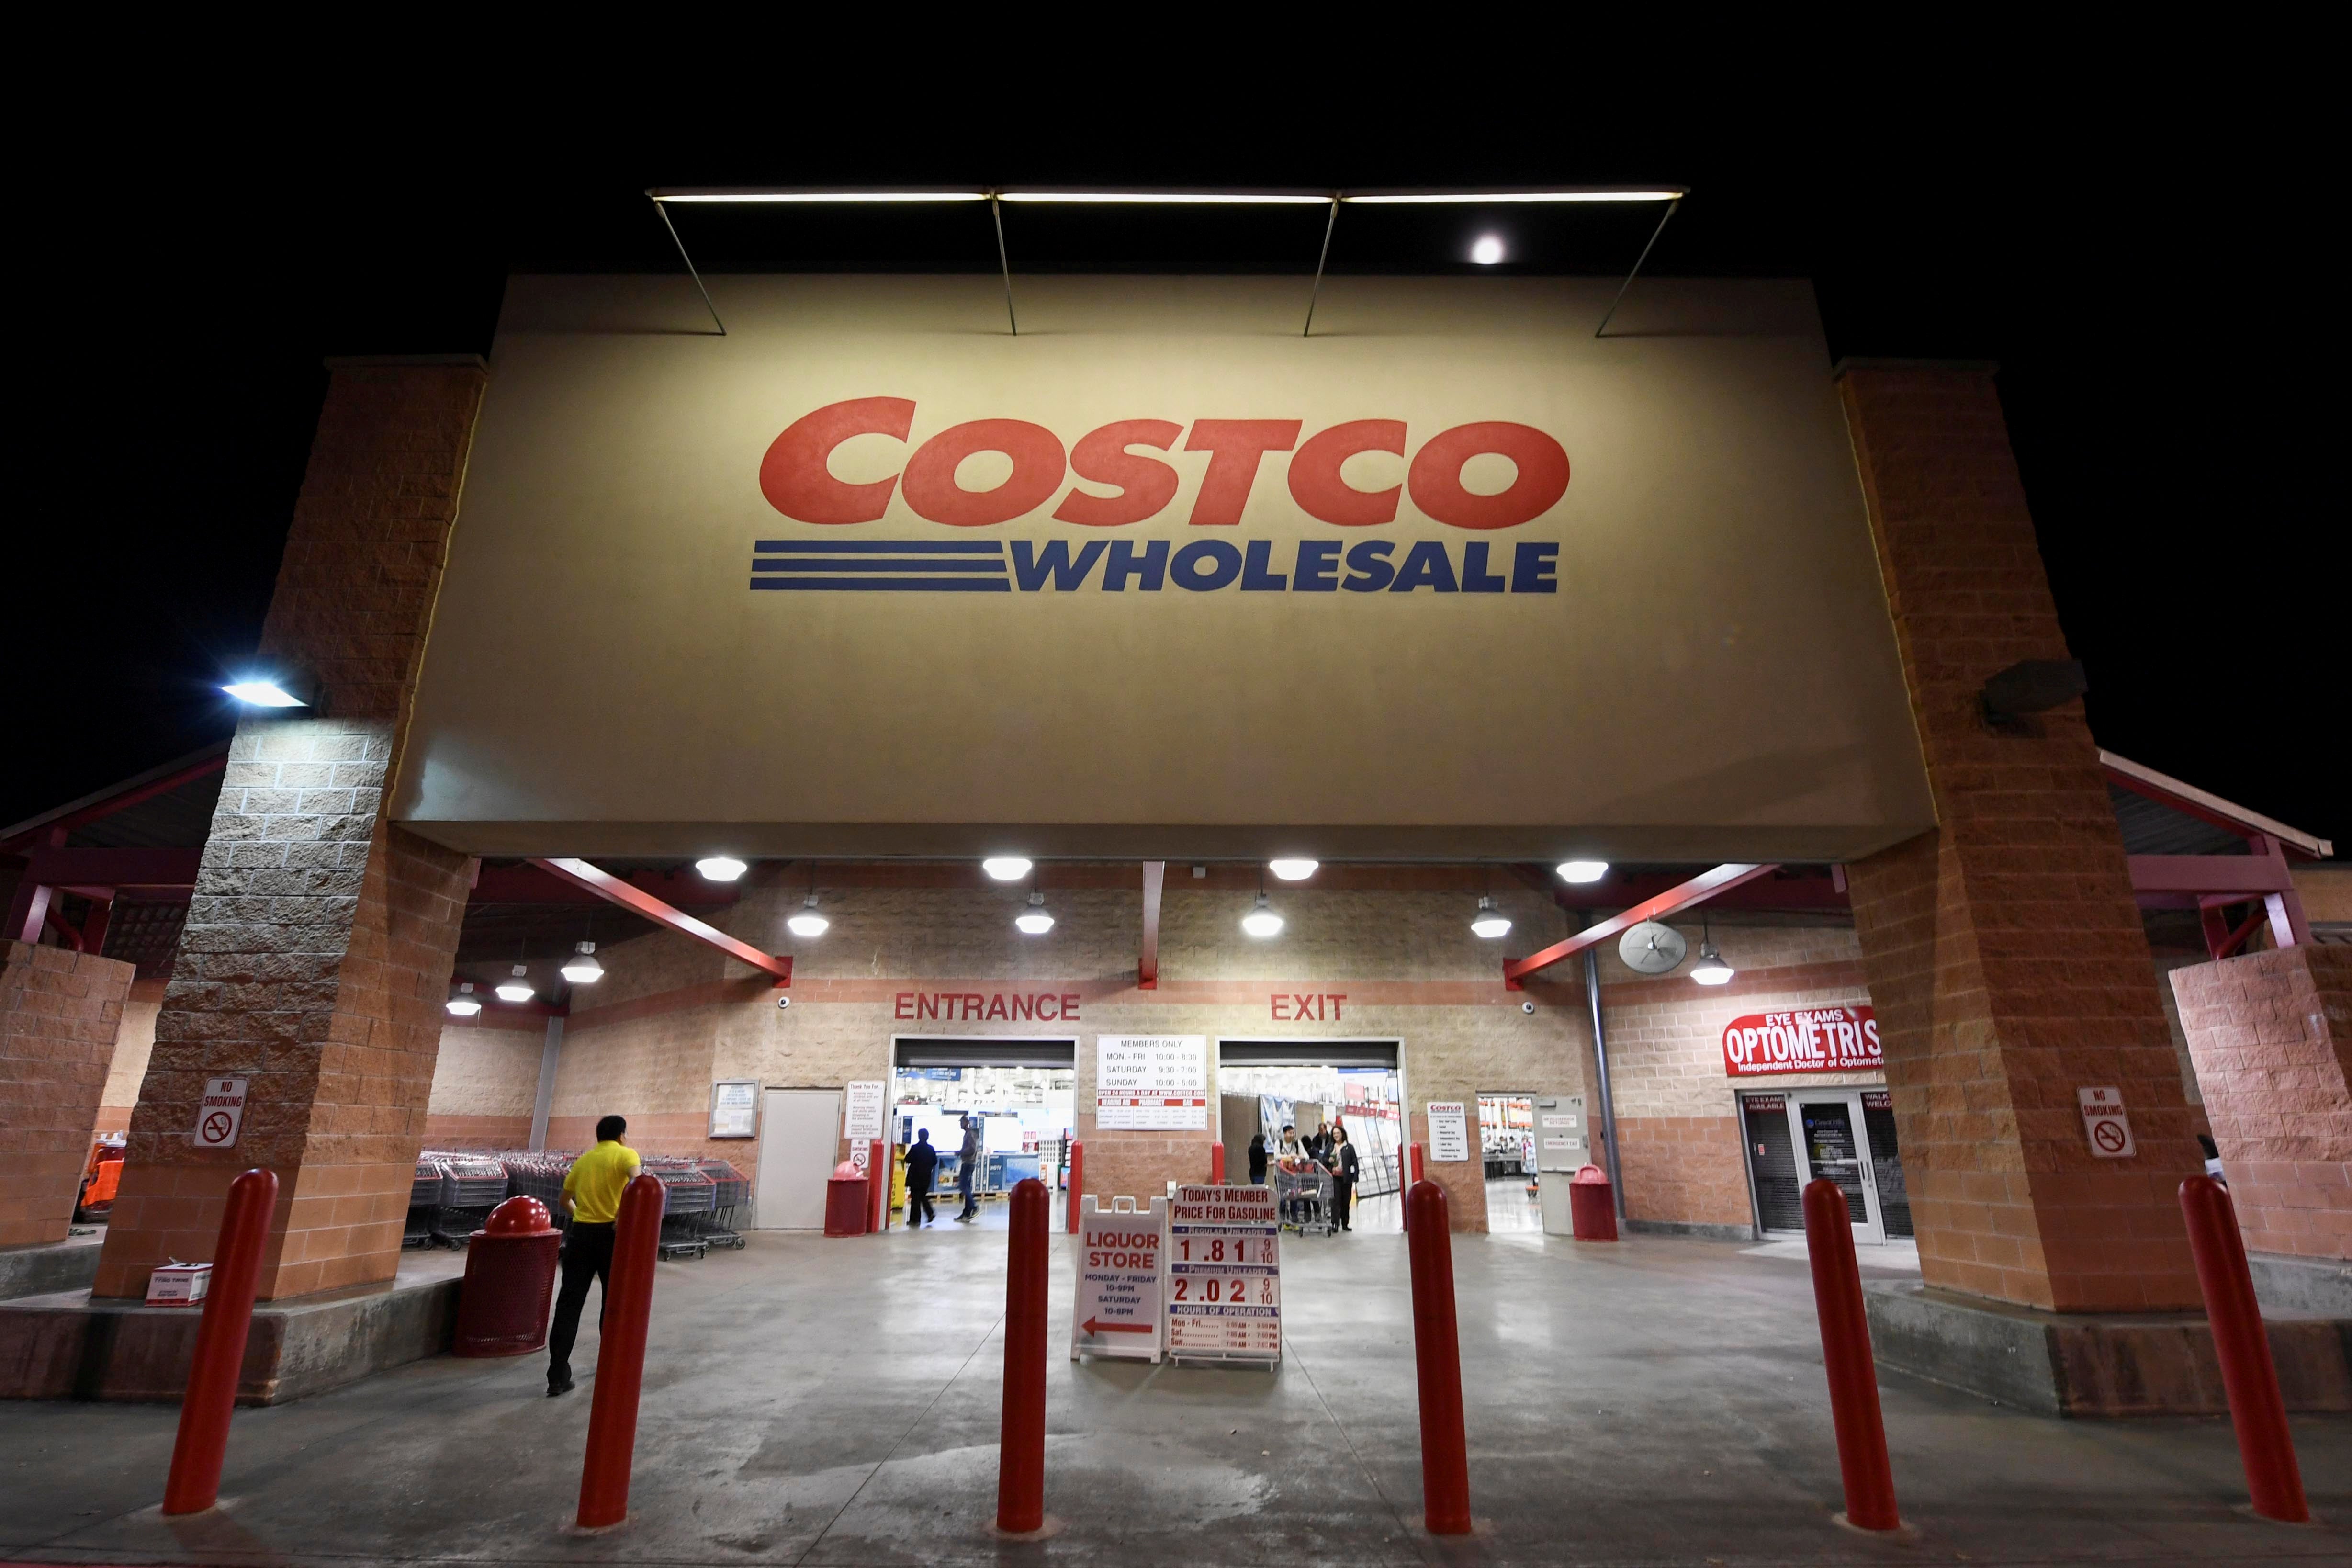 A Costco wholesale location.